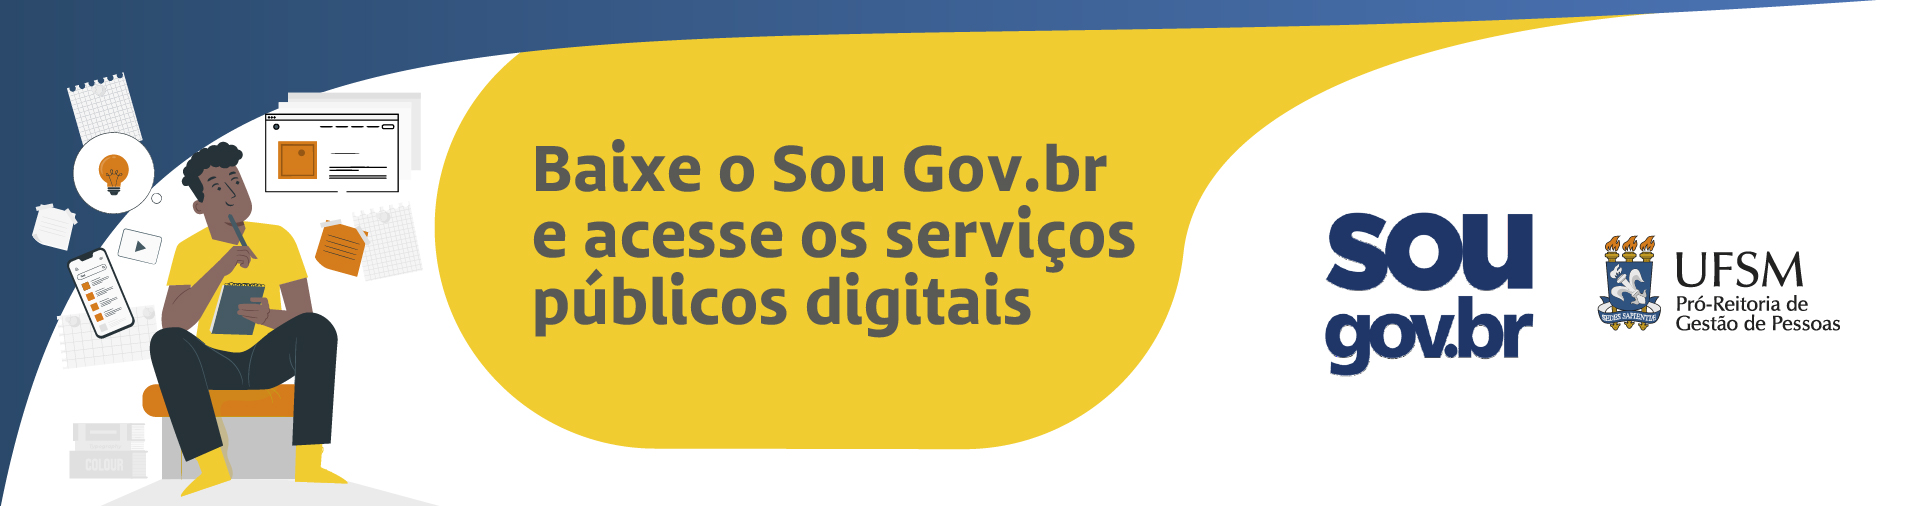 Banner branco e amarelo com ilustração de pessoa e aplicativos e texto: Baixe o SouGov.br e acesse os serviços públicos digitais